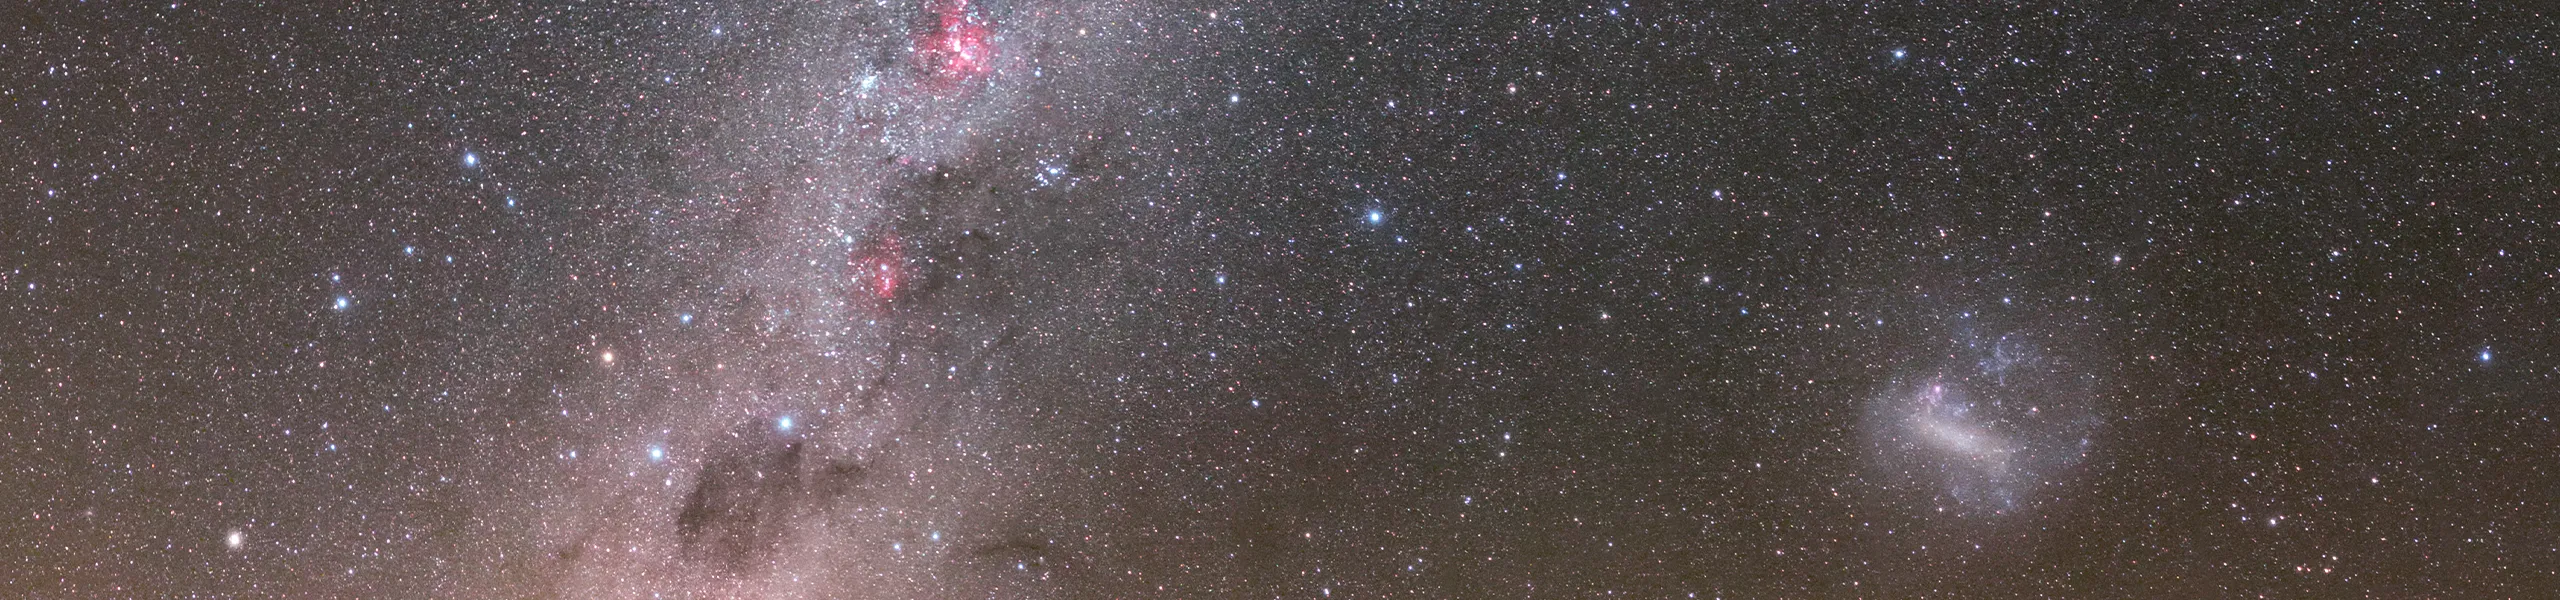 Ilustračný obrázok zdroj: ESO/P. Horálek